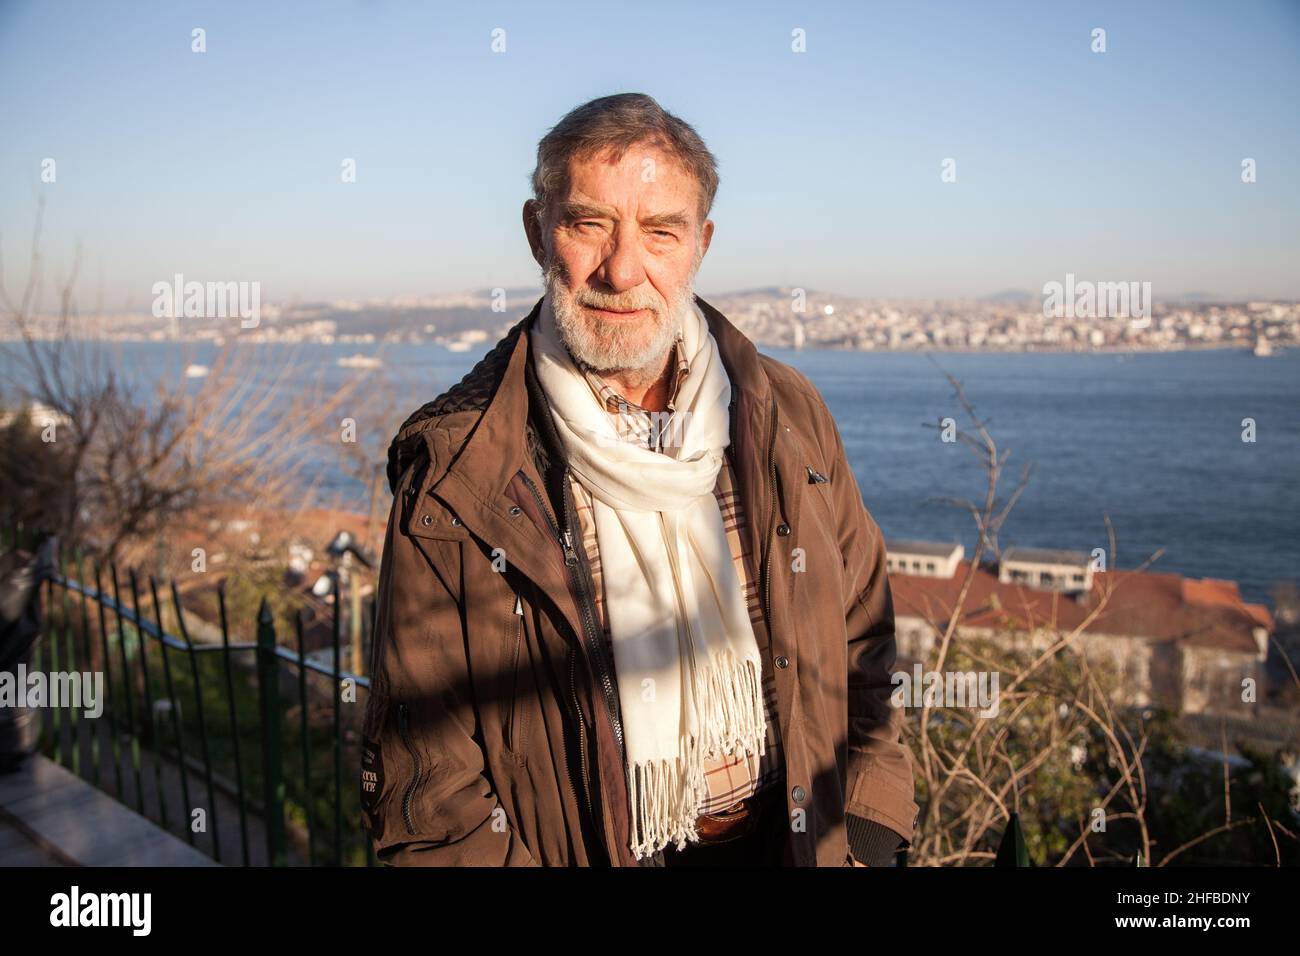 İstanbul/Turkey - 2/17/2014:Ahmet Mekin is a Turkish actor. Stock Photo